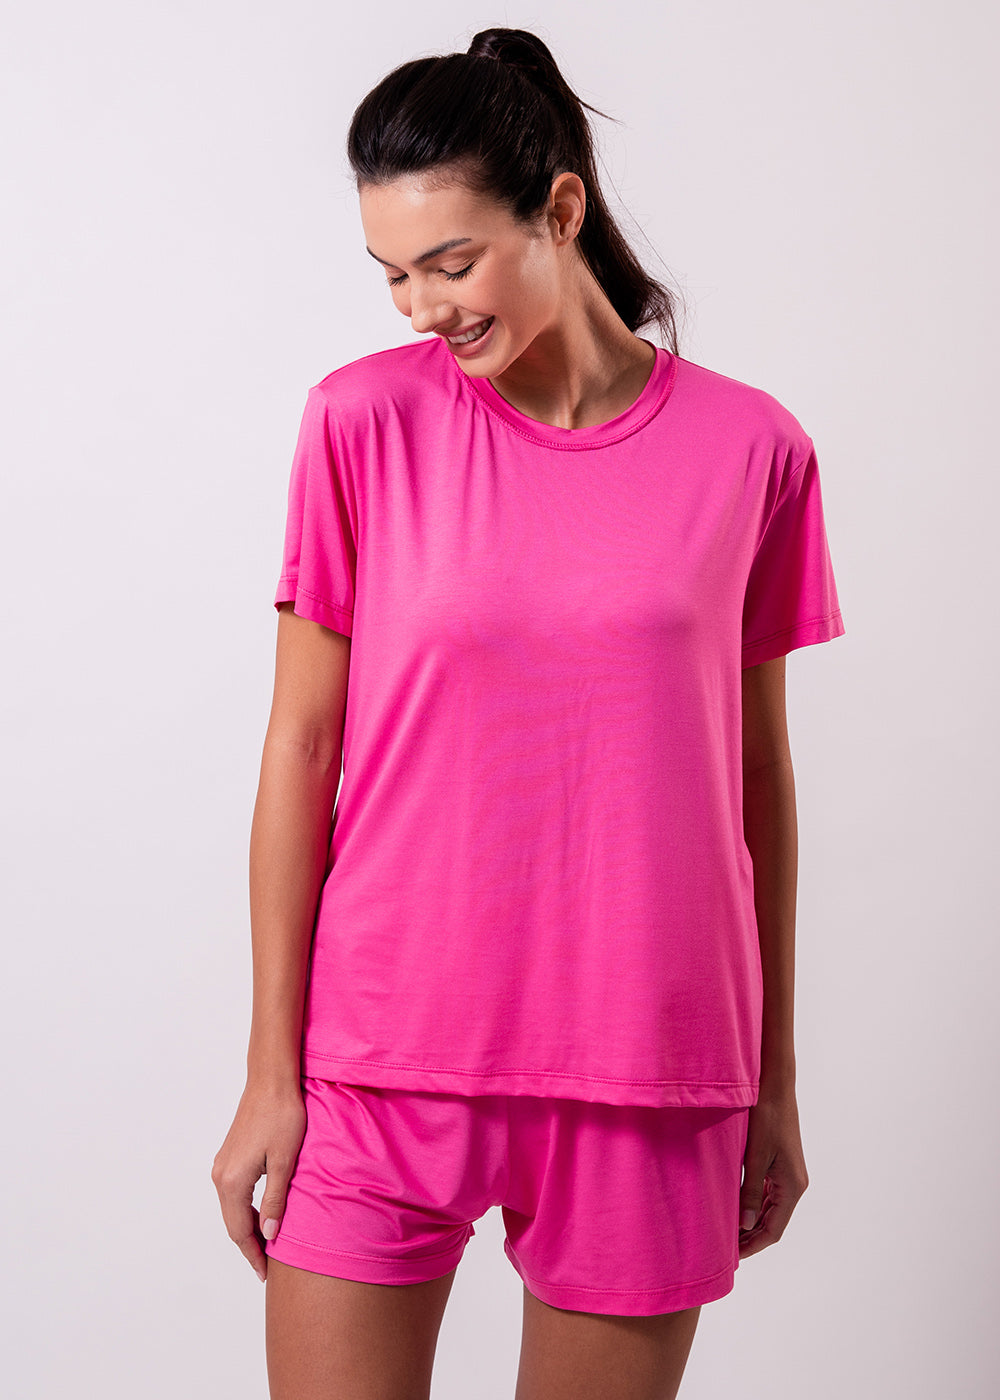 Camiseta Modal® Pink